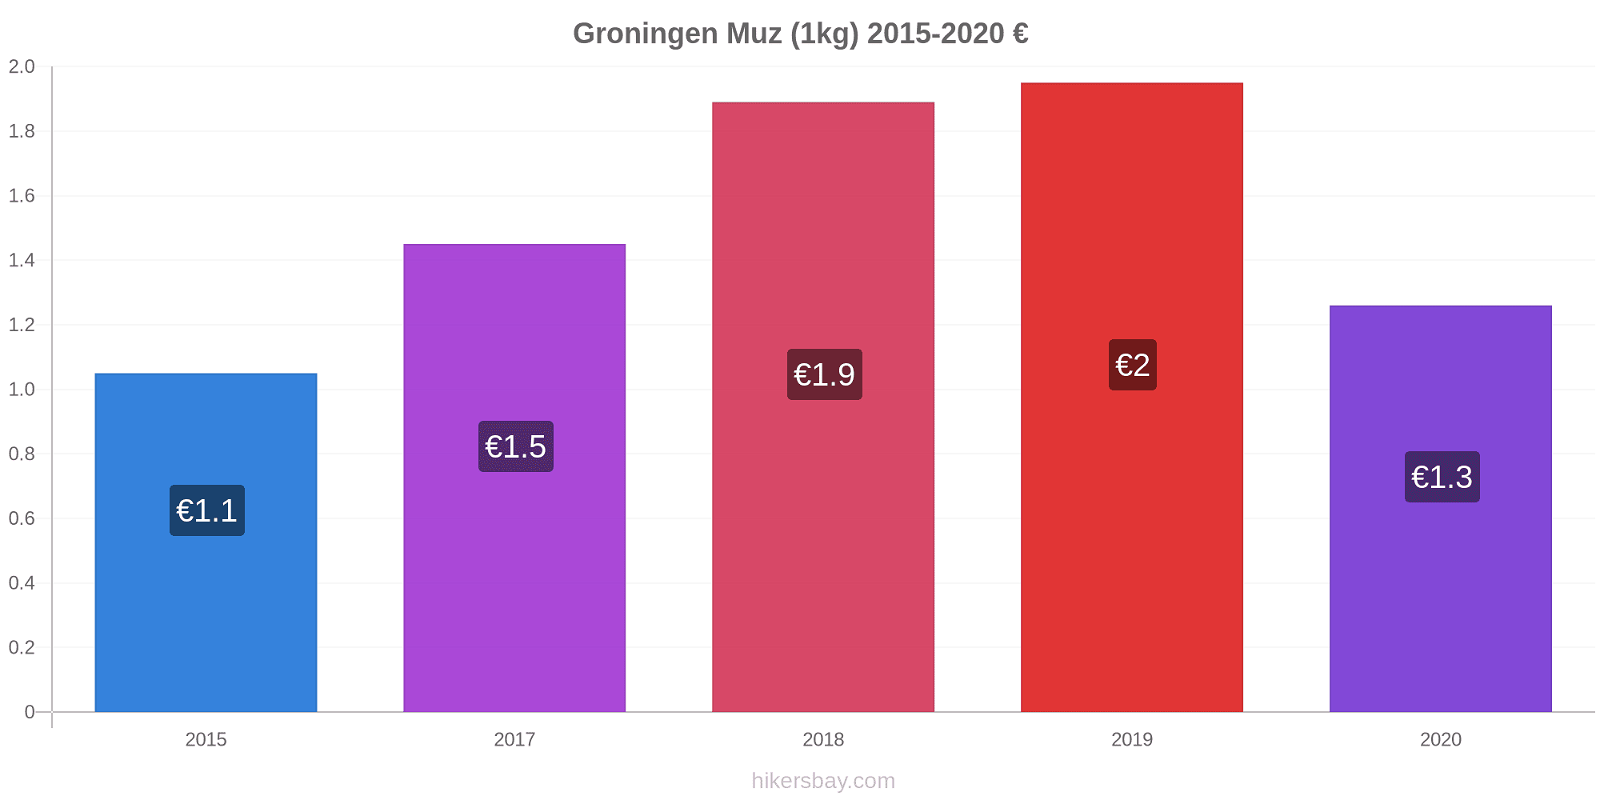 Groningen fiyat değişiklikleri Muz (1kg) hikersbay.com